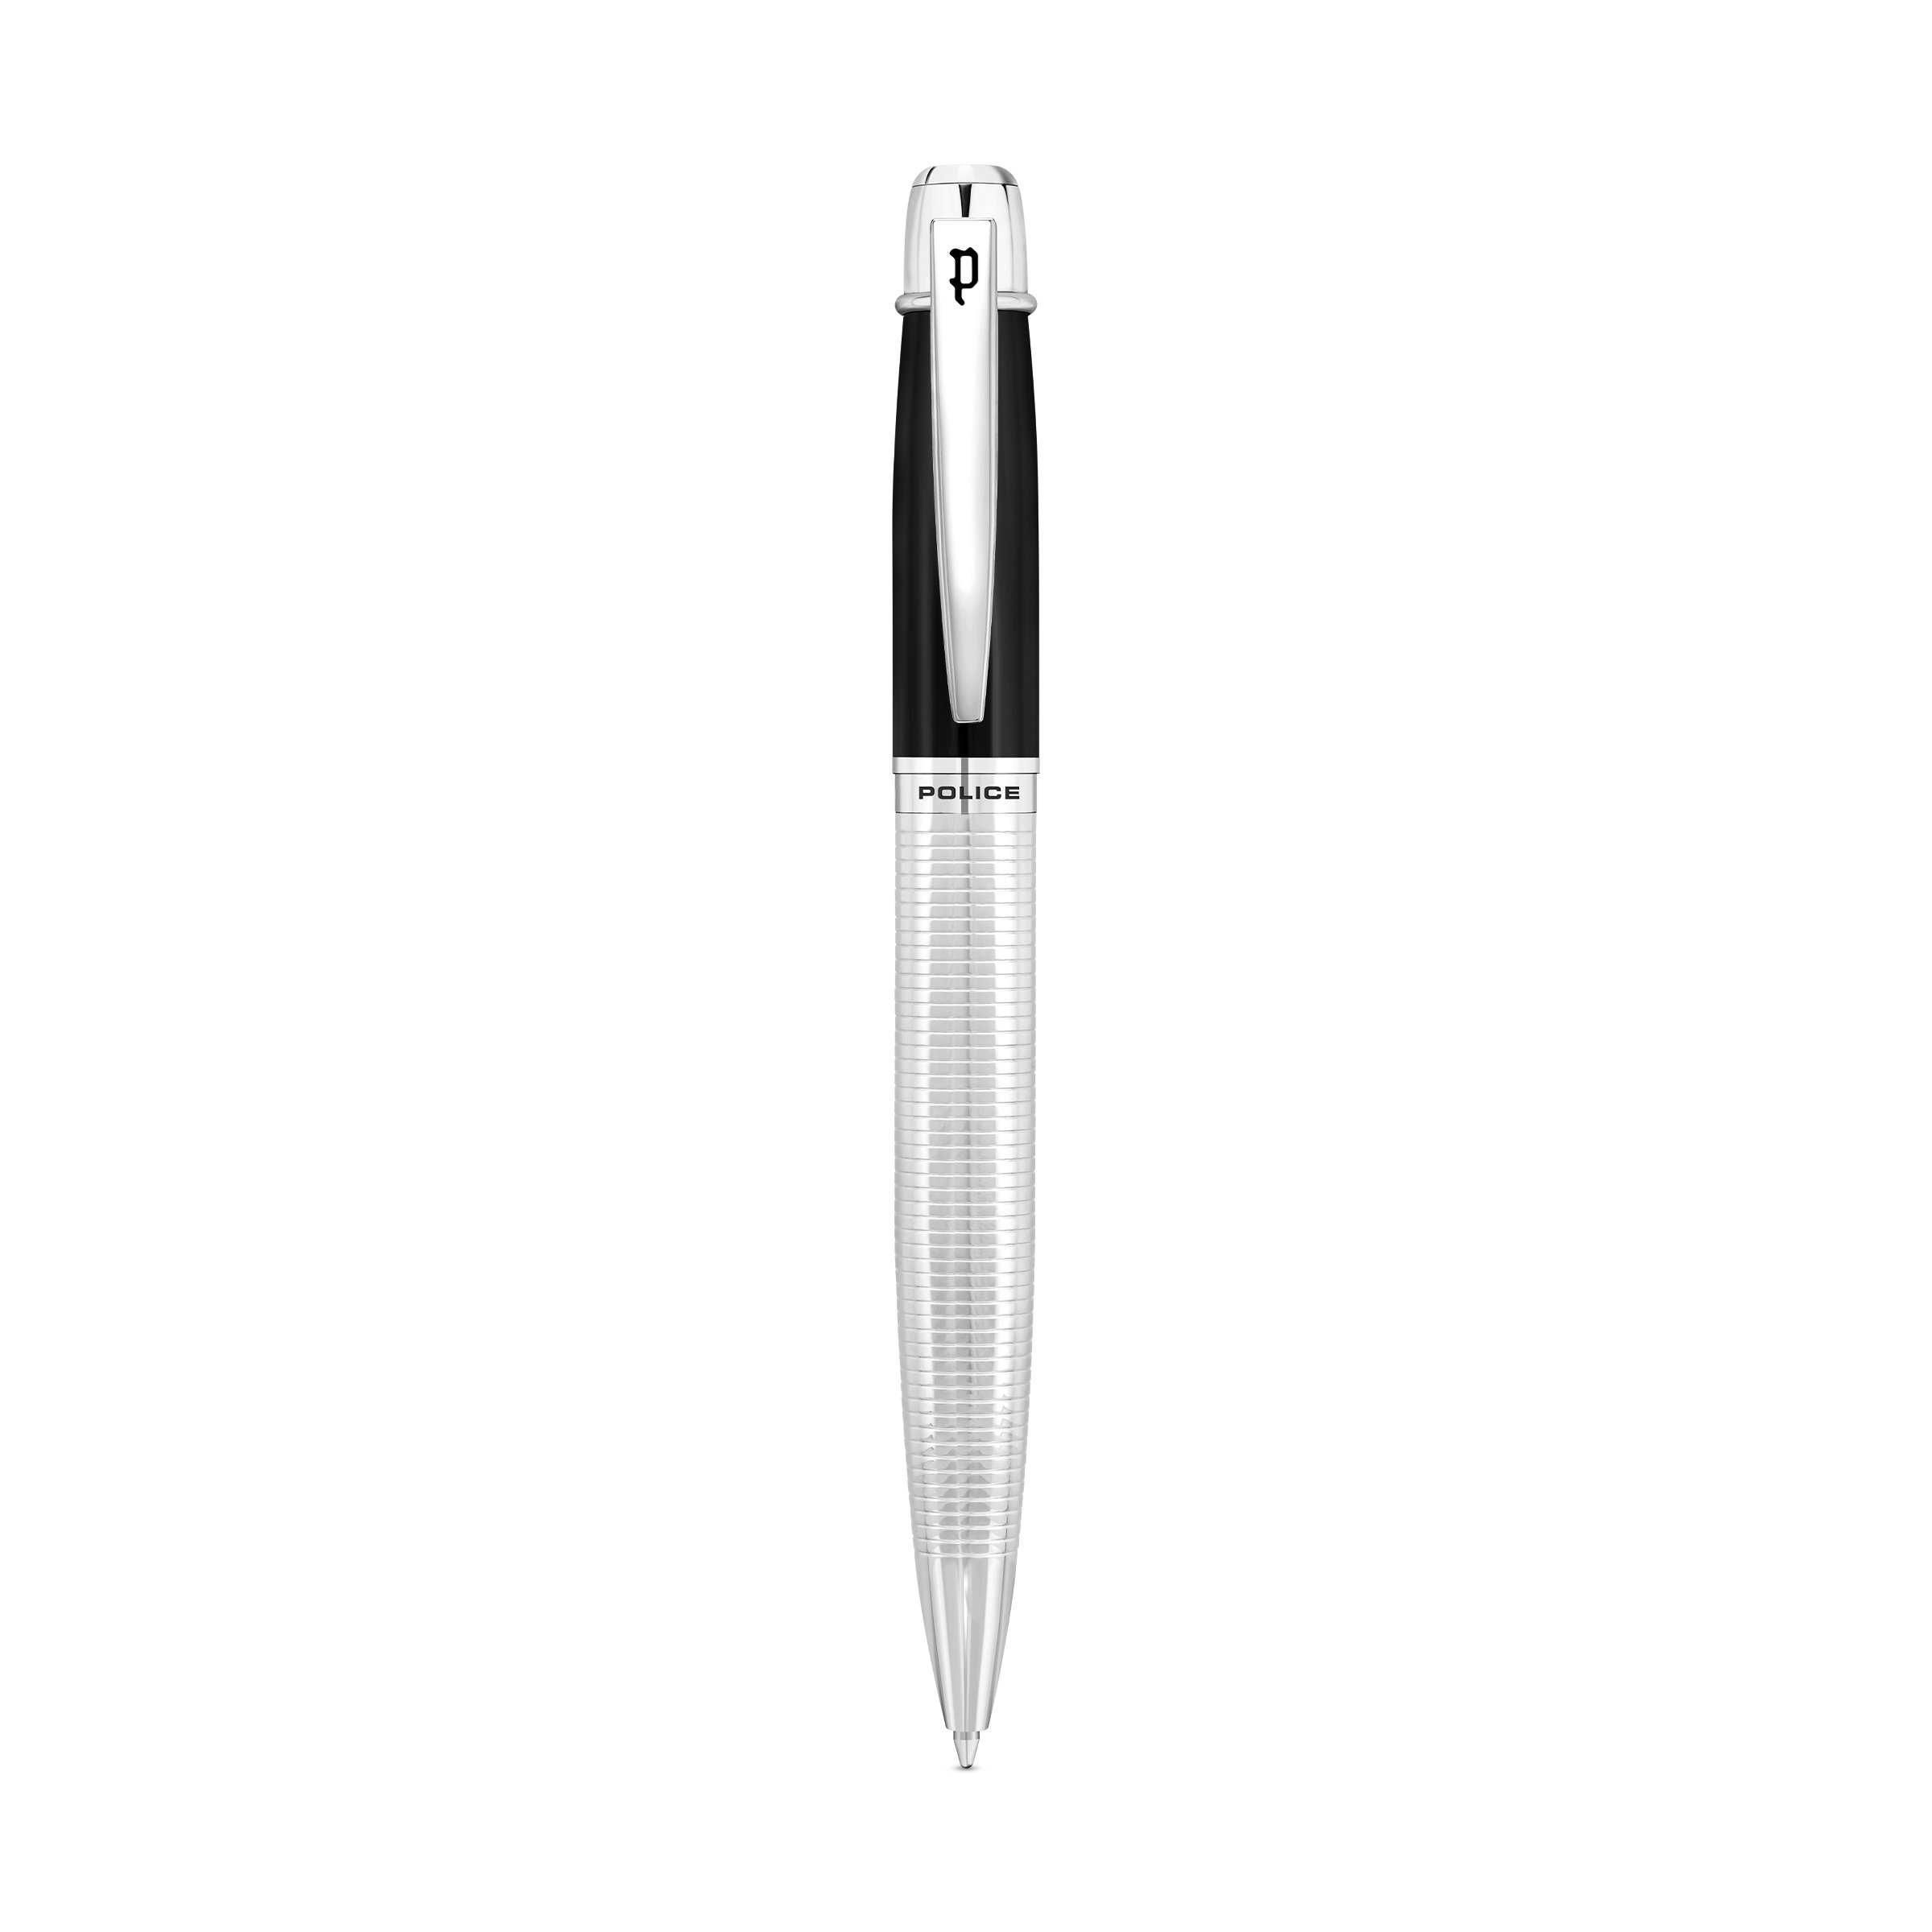 POLICE - Takota Pen For Men Black & Silver Color - PERGR0001401